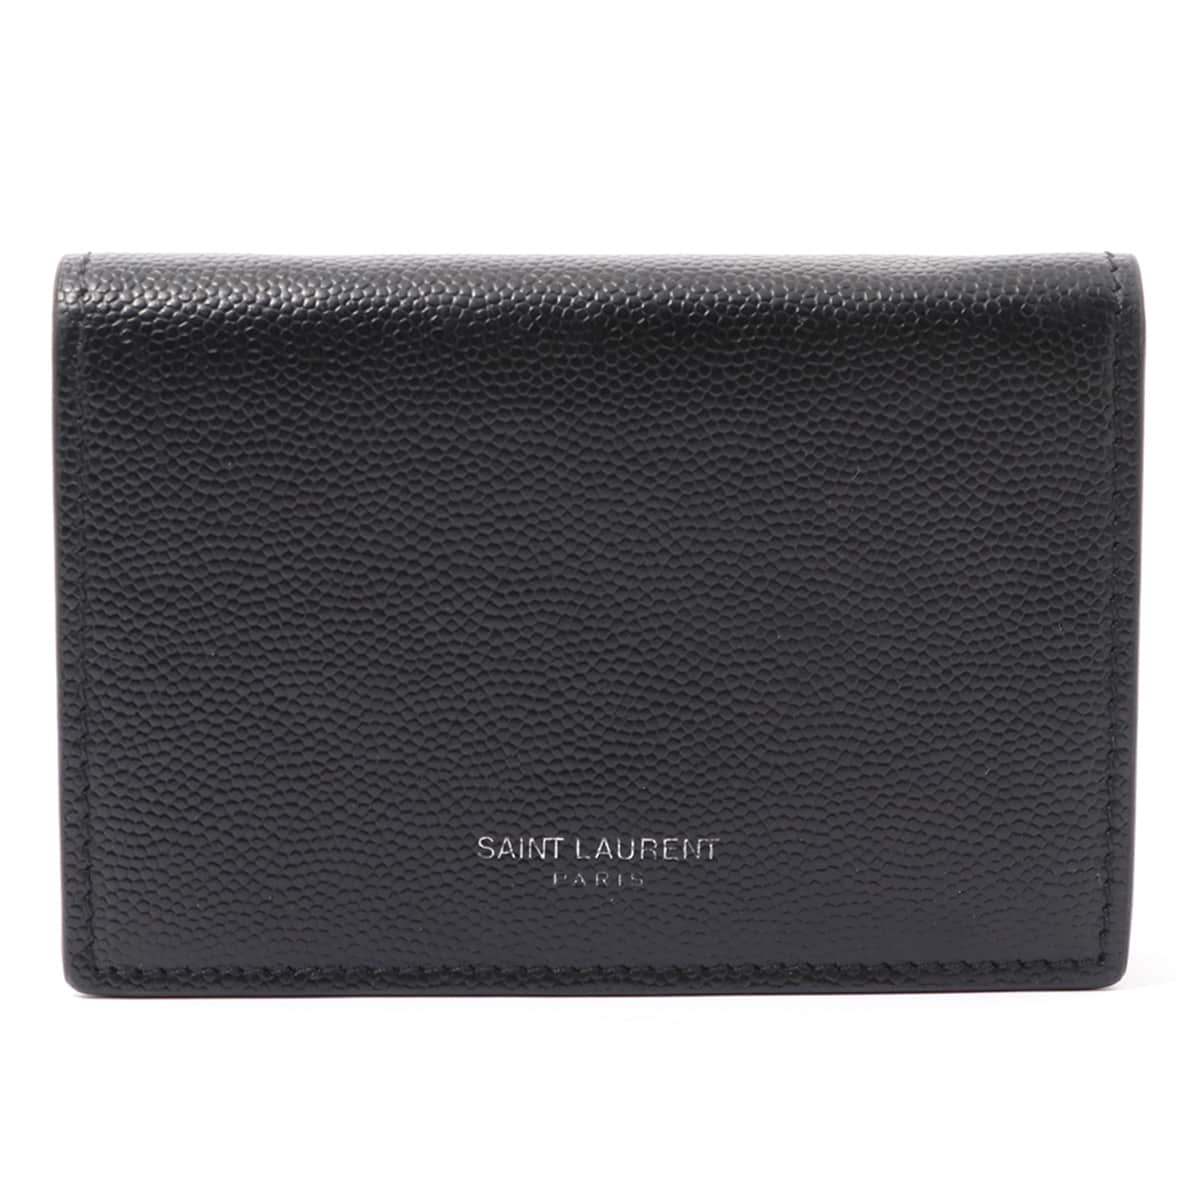 Saint Laurent Paris Leather Card case Black Card case